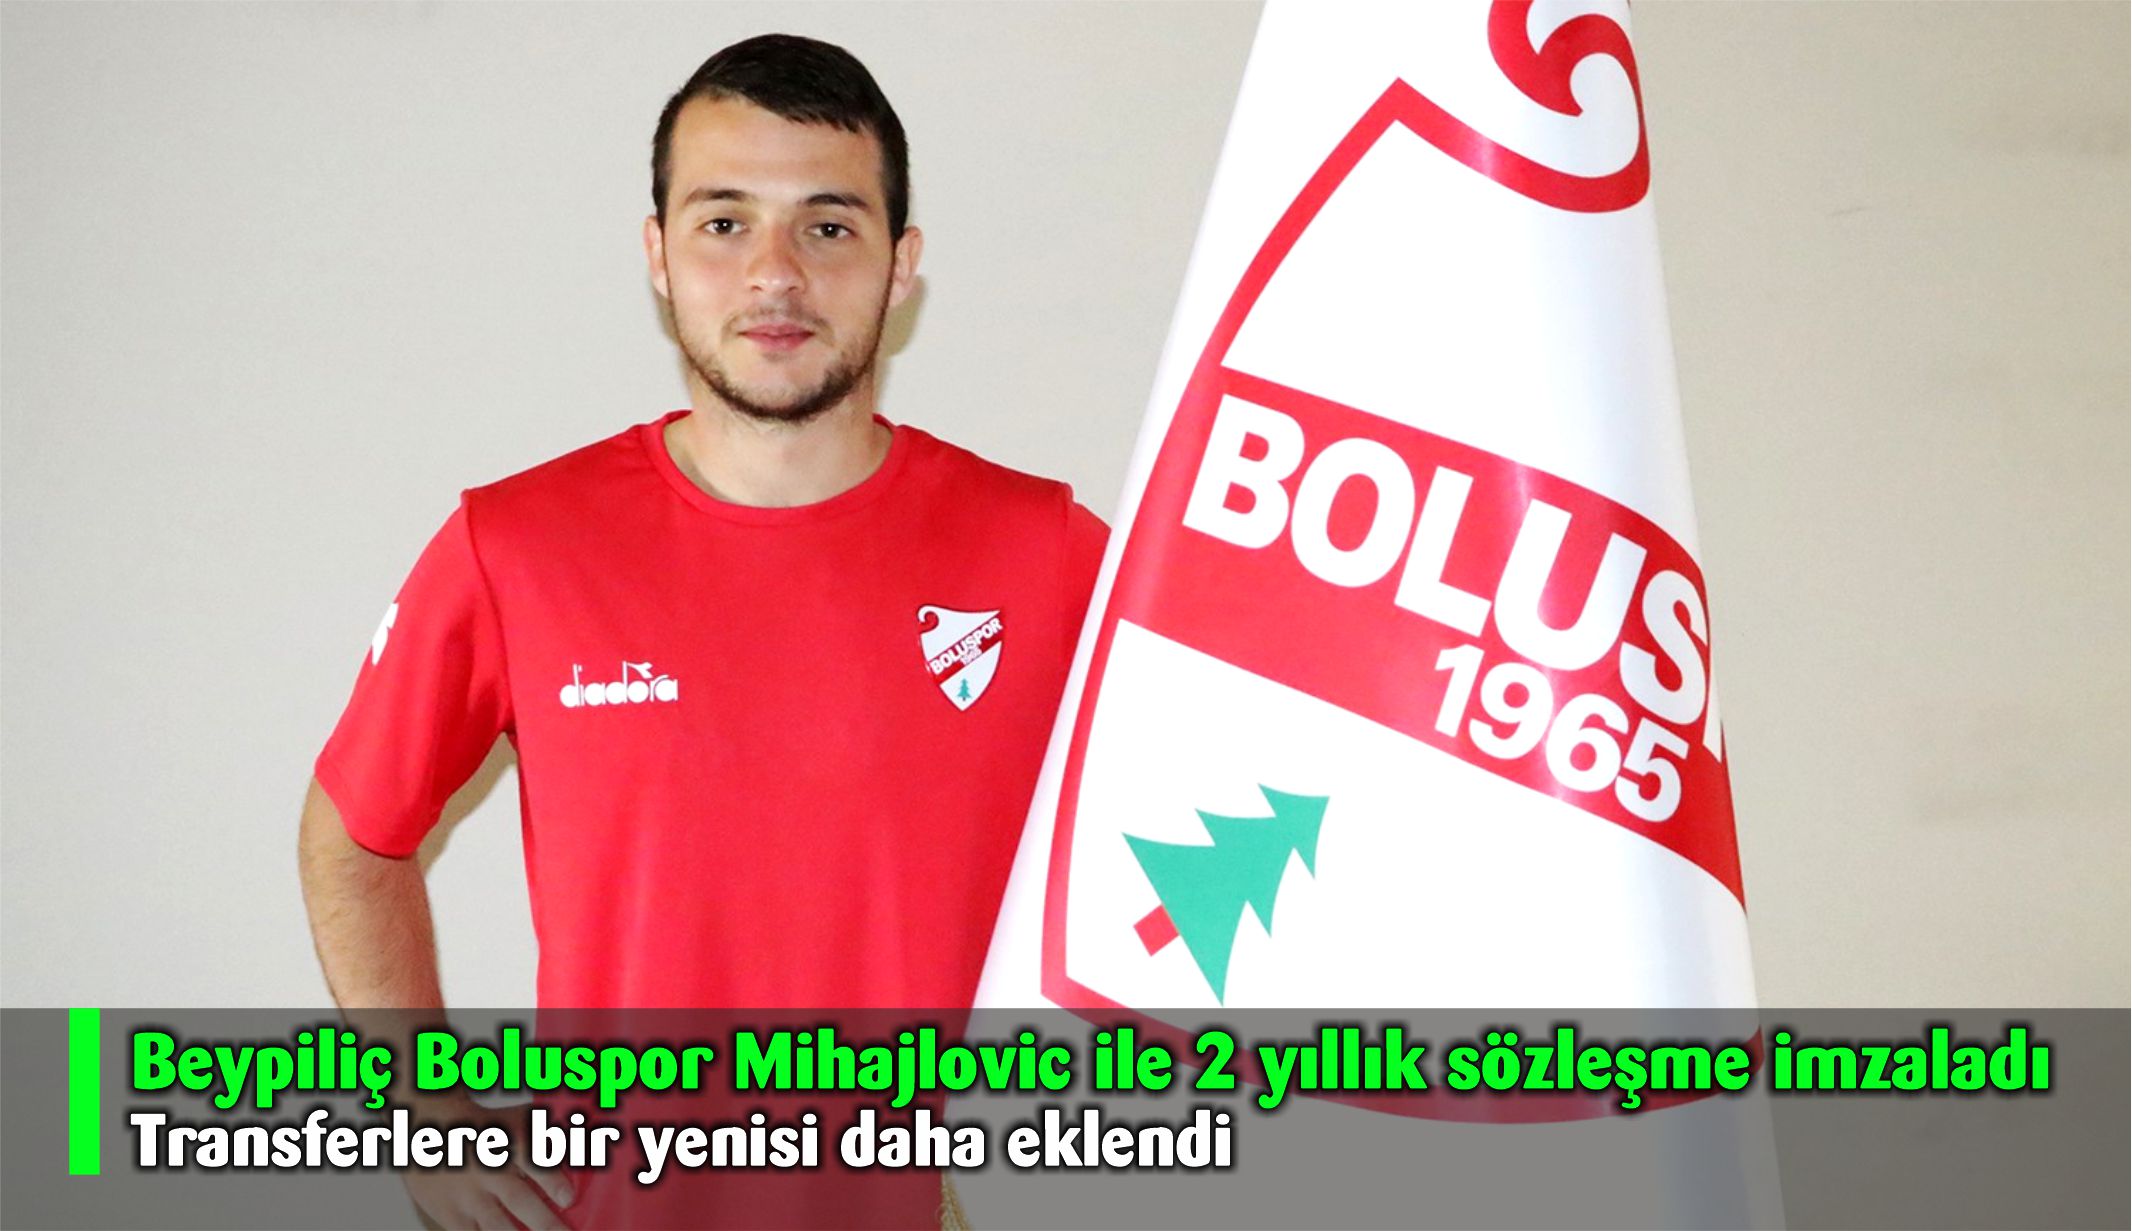 Beypiliç Boluspor Mihajlovic ile 2 yıllık sözleşme imzaladı